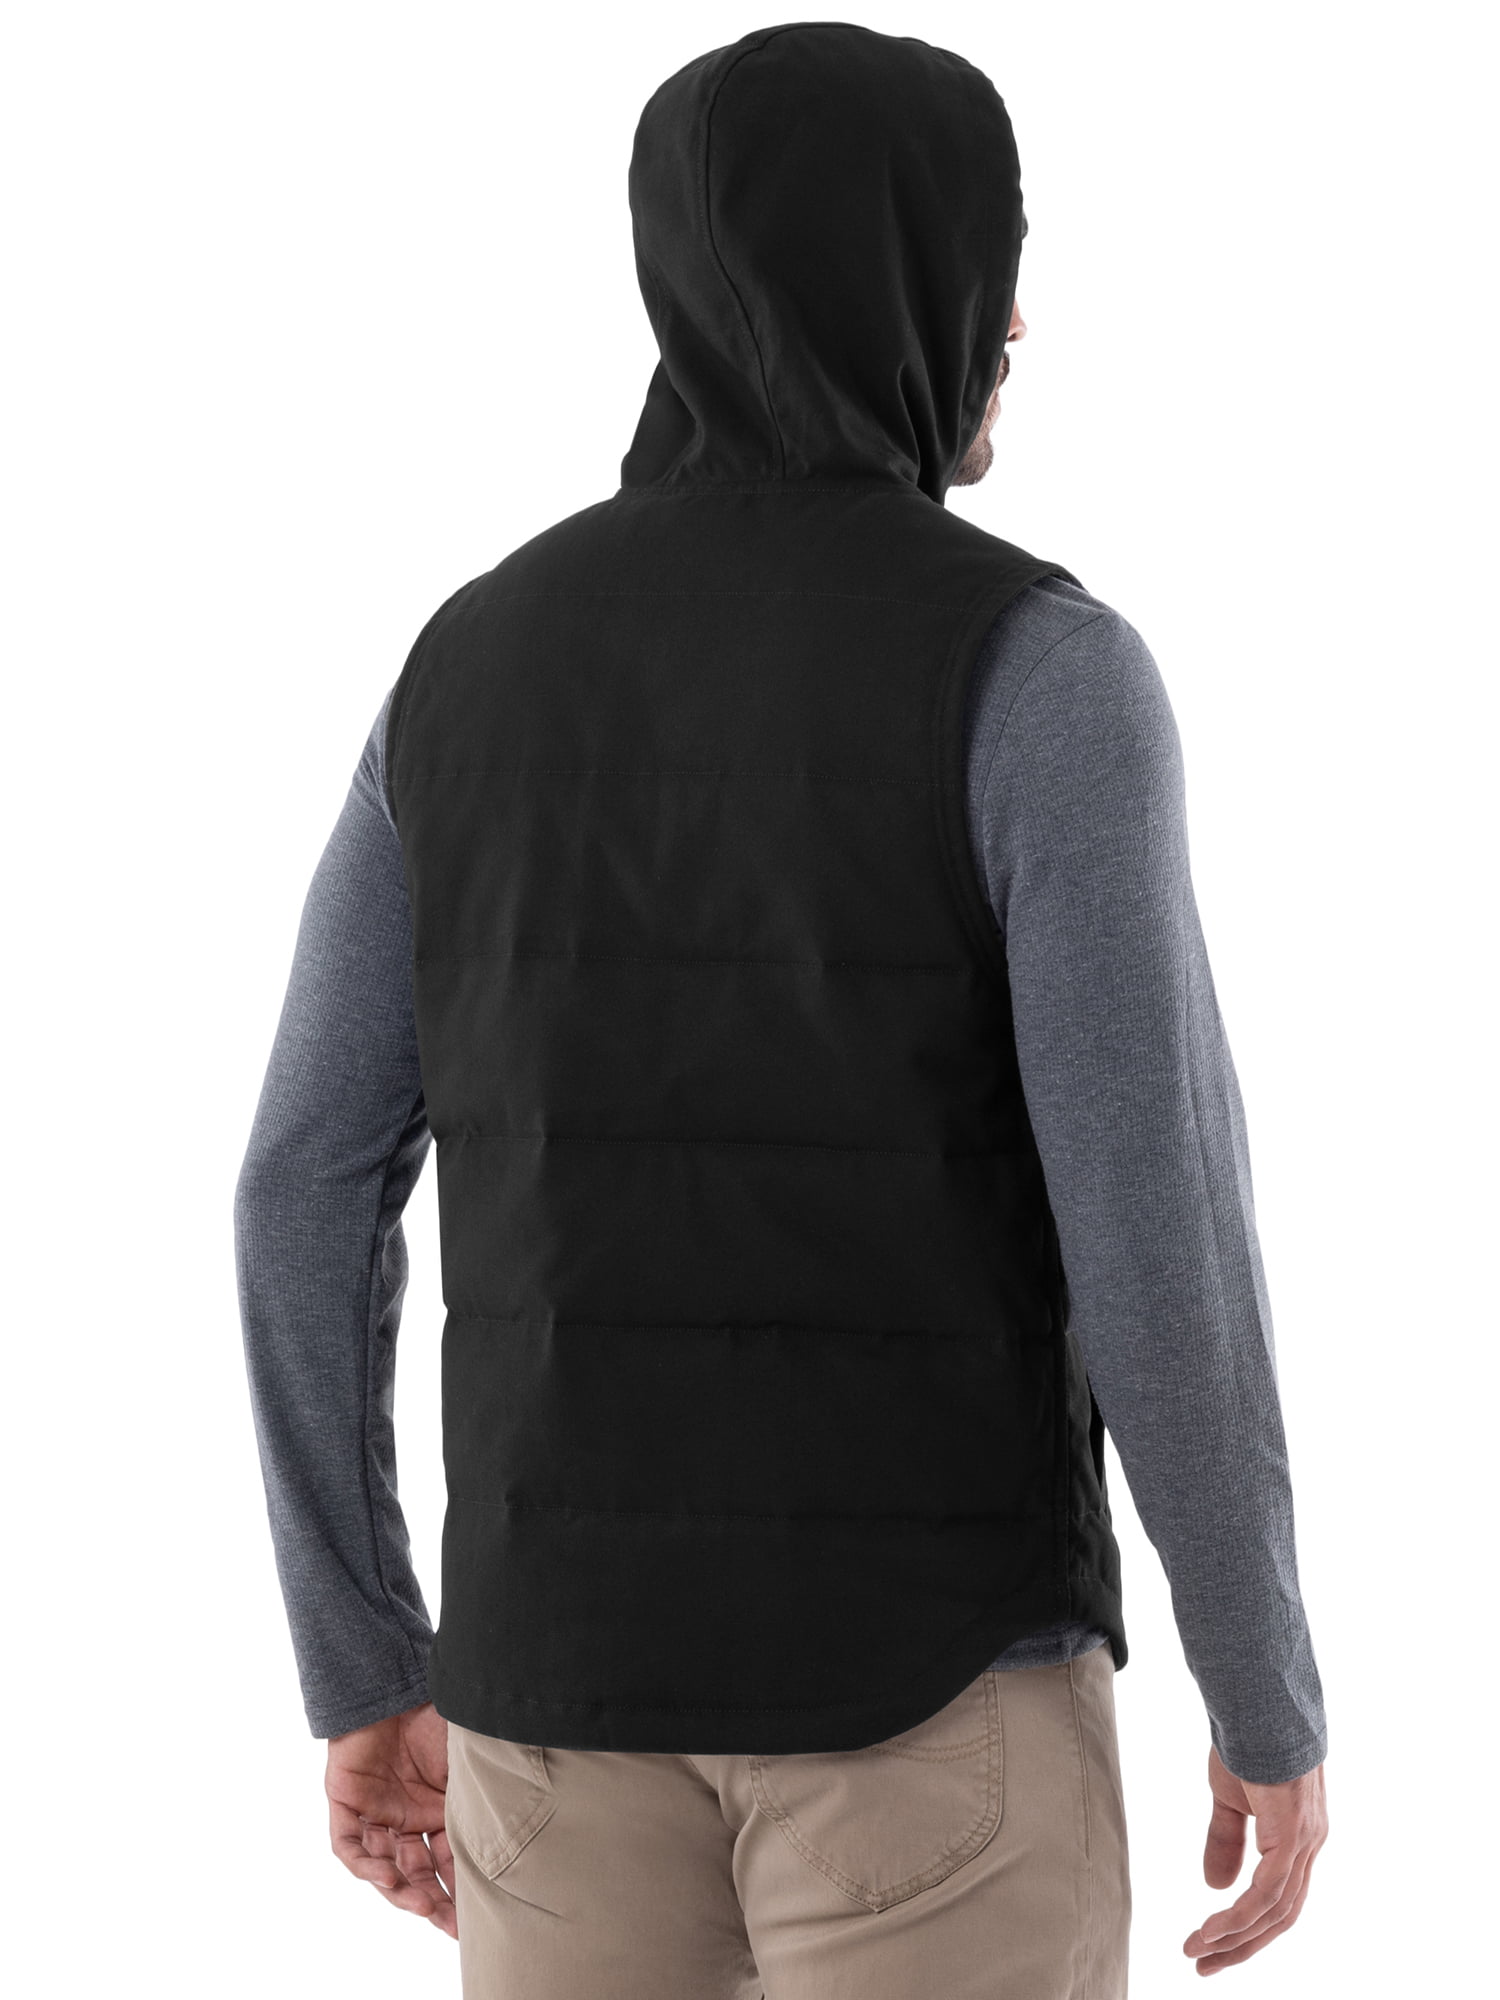 Wrangler Workwear Men's Work Vest with Hood 